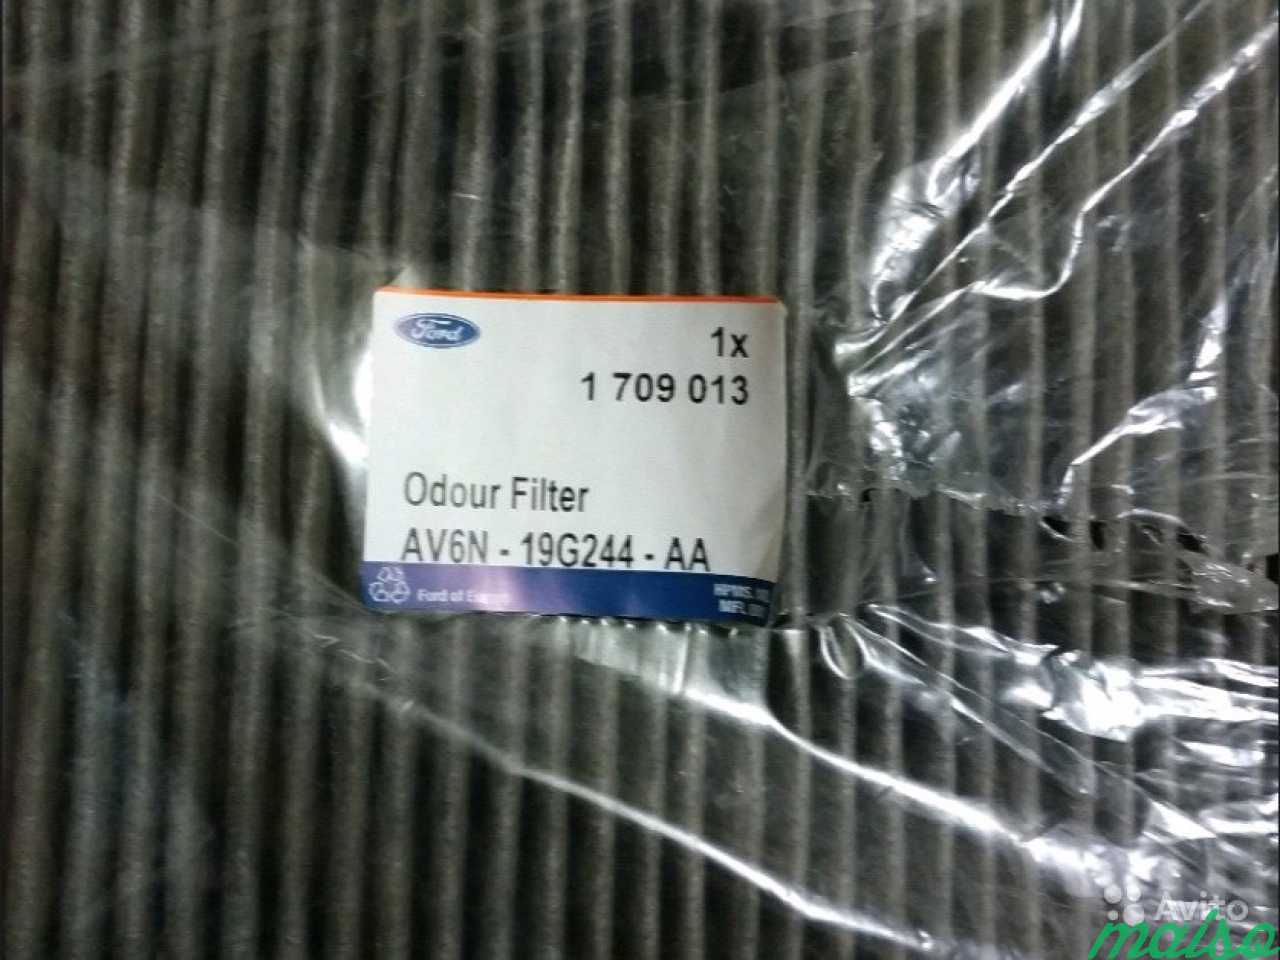 Воздушный фильтр odour filter ford av6n 19g244 aa в Санкт-Петербурге. Фото 1